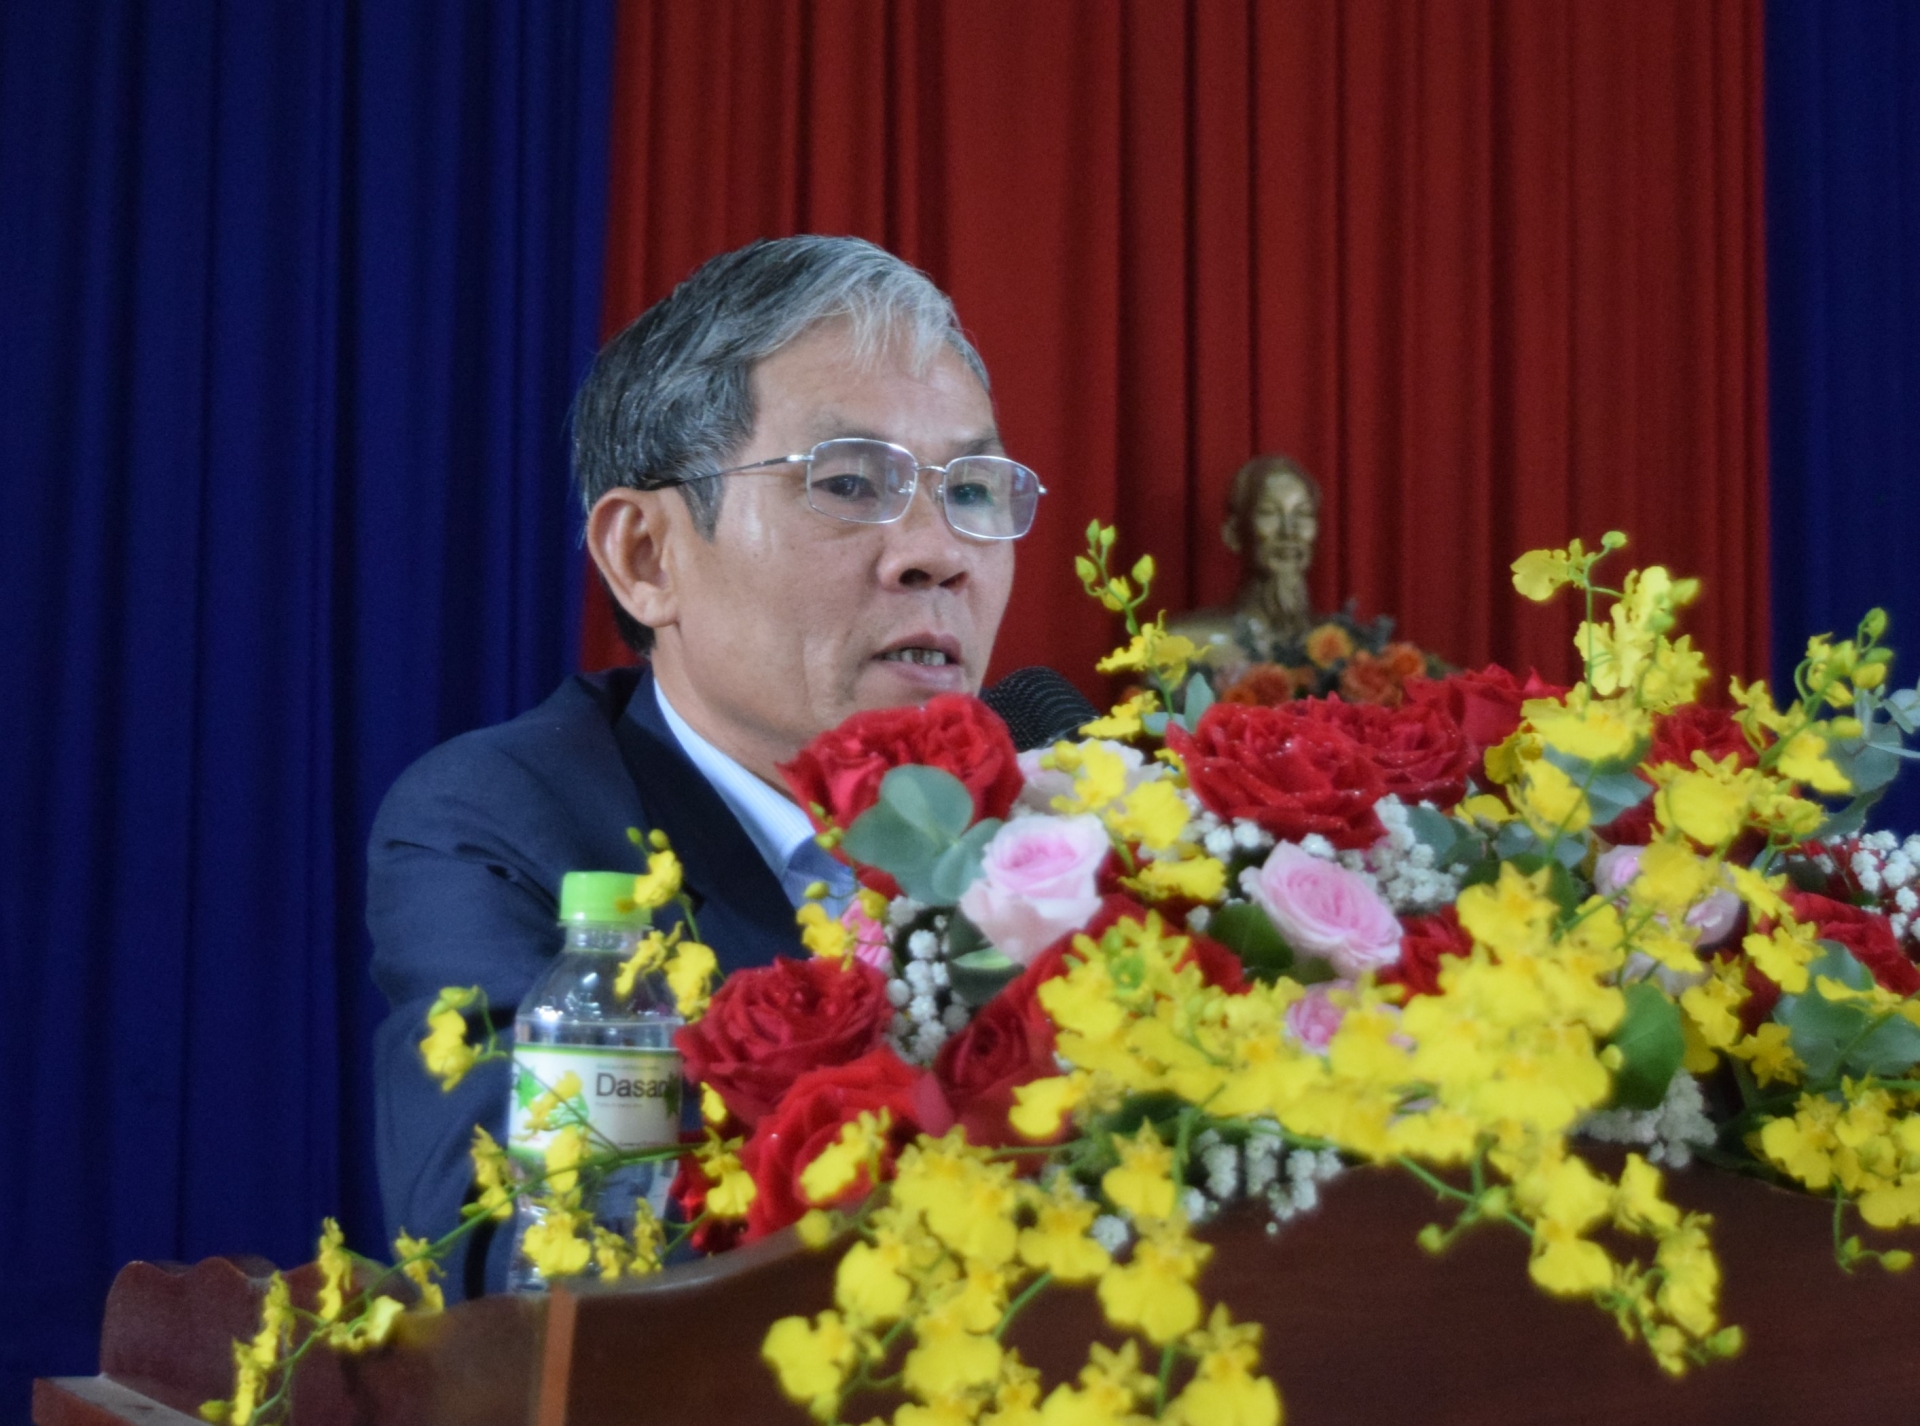 Ông Nguyễn Văn Cường – Chủ tịch UBND huyện, tiếp thu và giải trình ý kiến của cử tri.